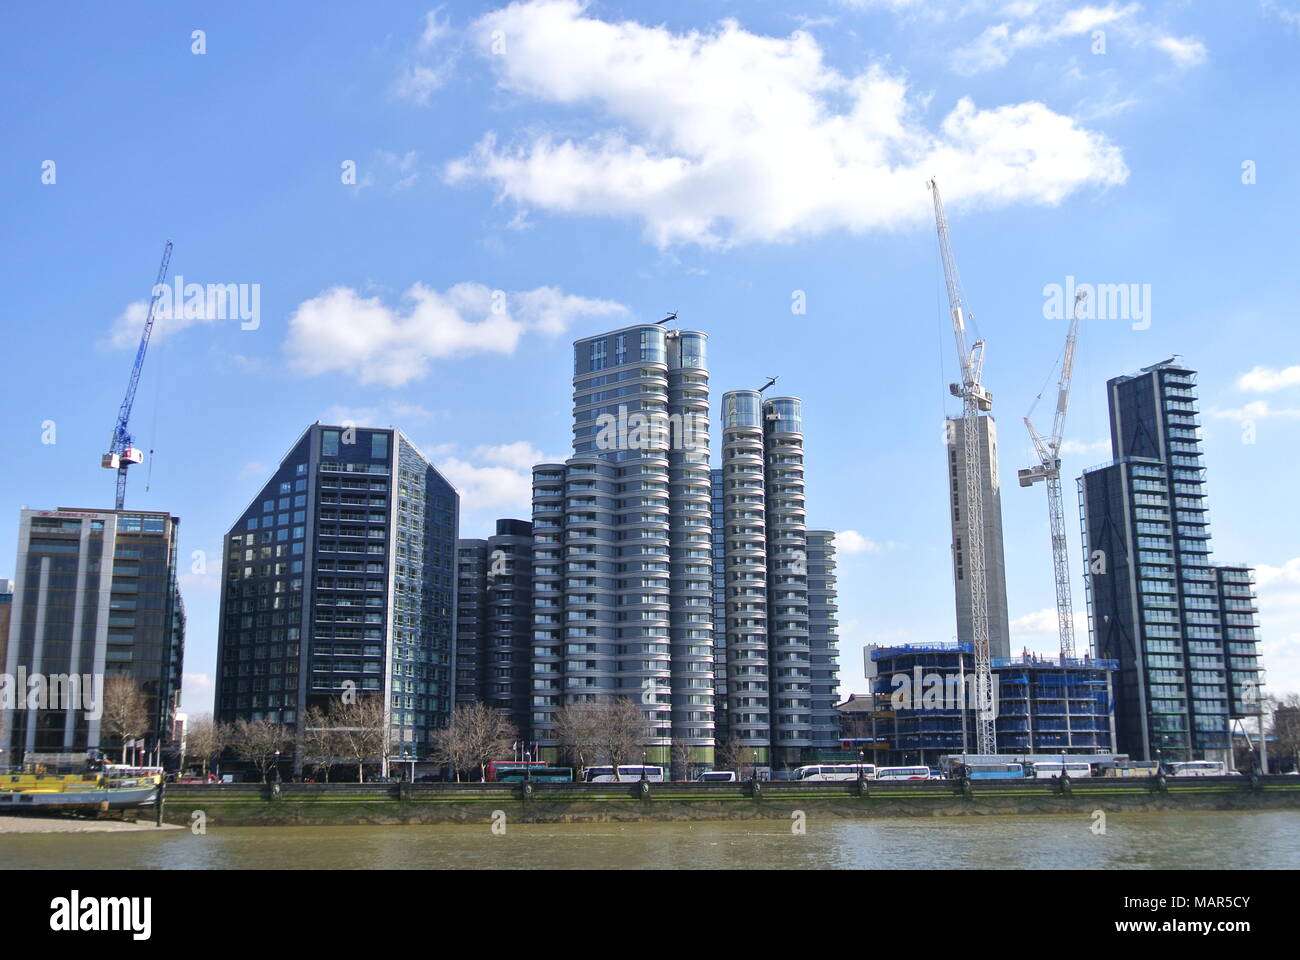 Appartamento di lusso blocchi; La Corniche [centro sinistra], Il Dumont [centro, sotto costruzione], Merano [destra], Albert Embankment, London, England, Regno Unito Foto Stock